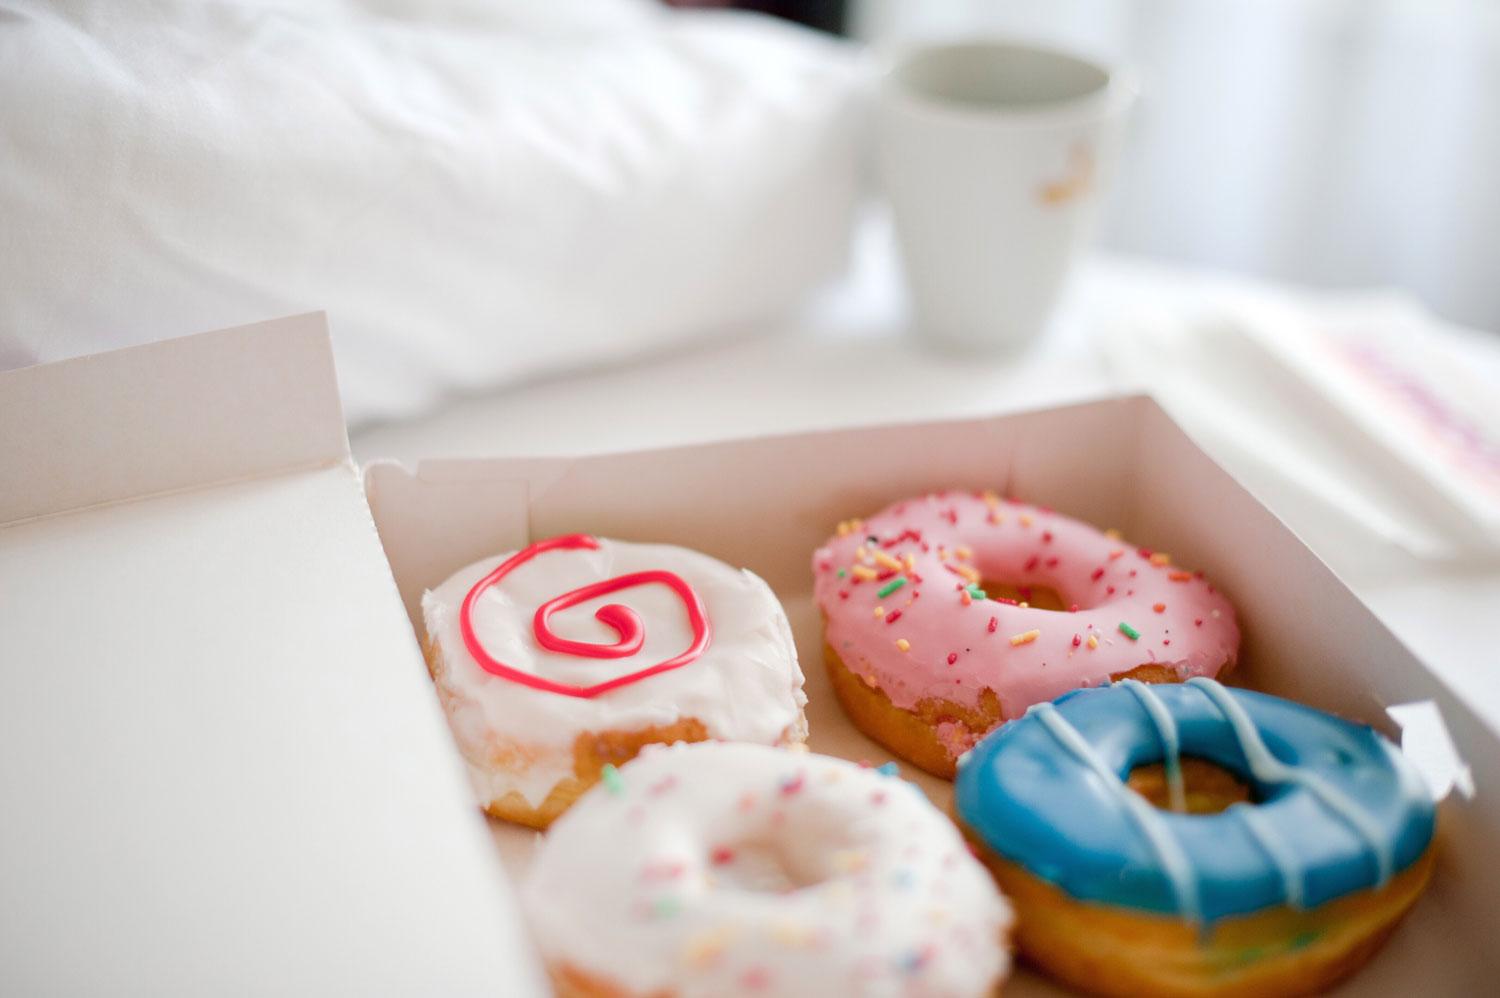 doughnuts in box